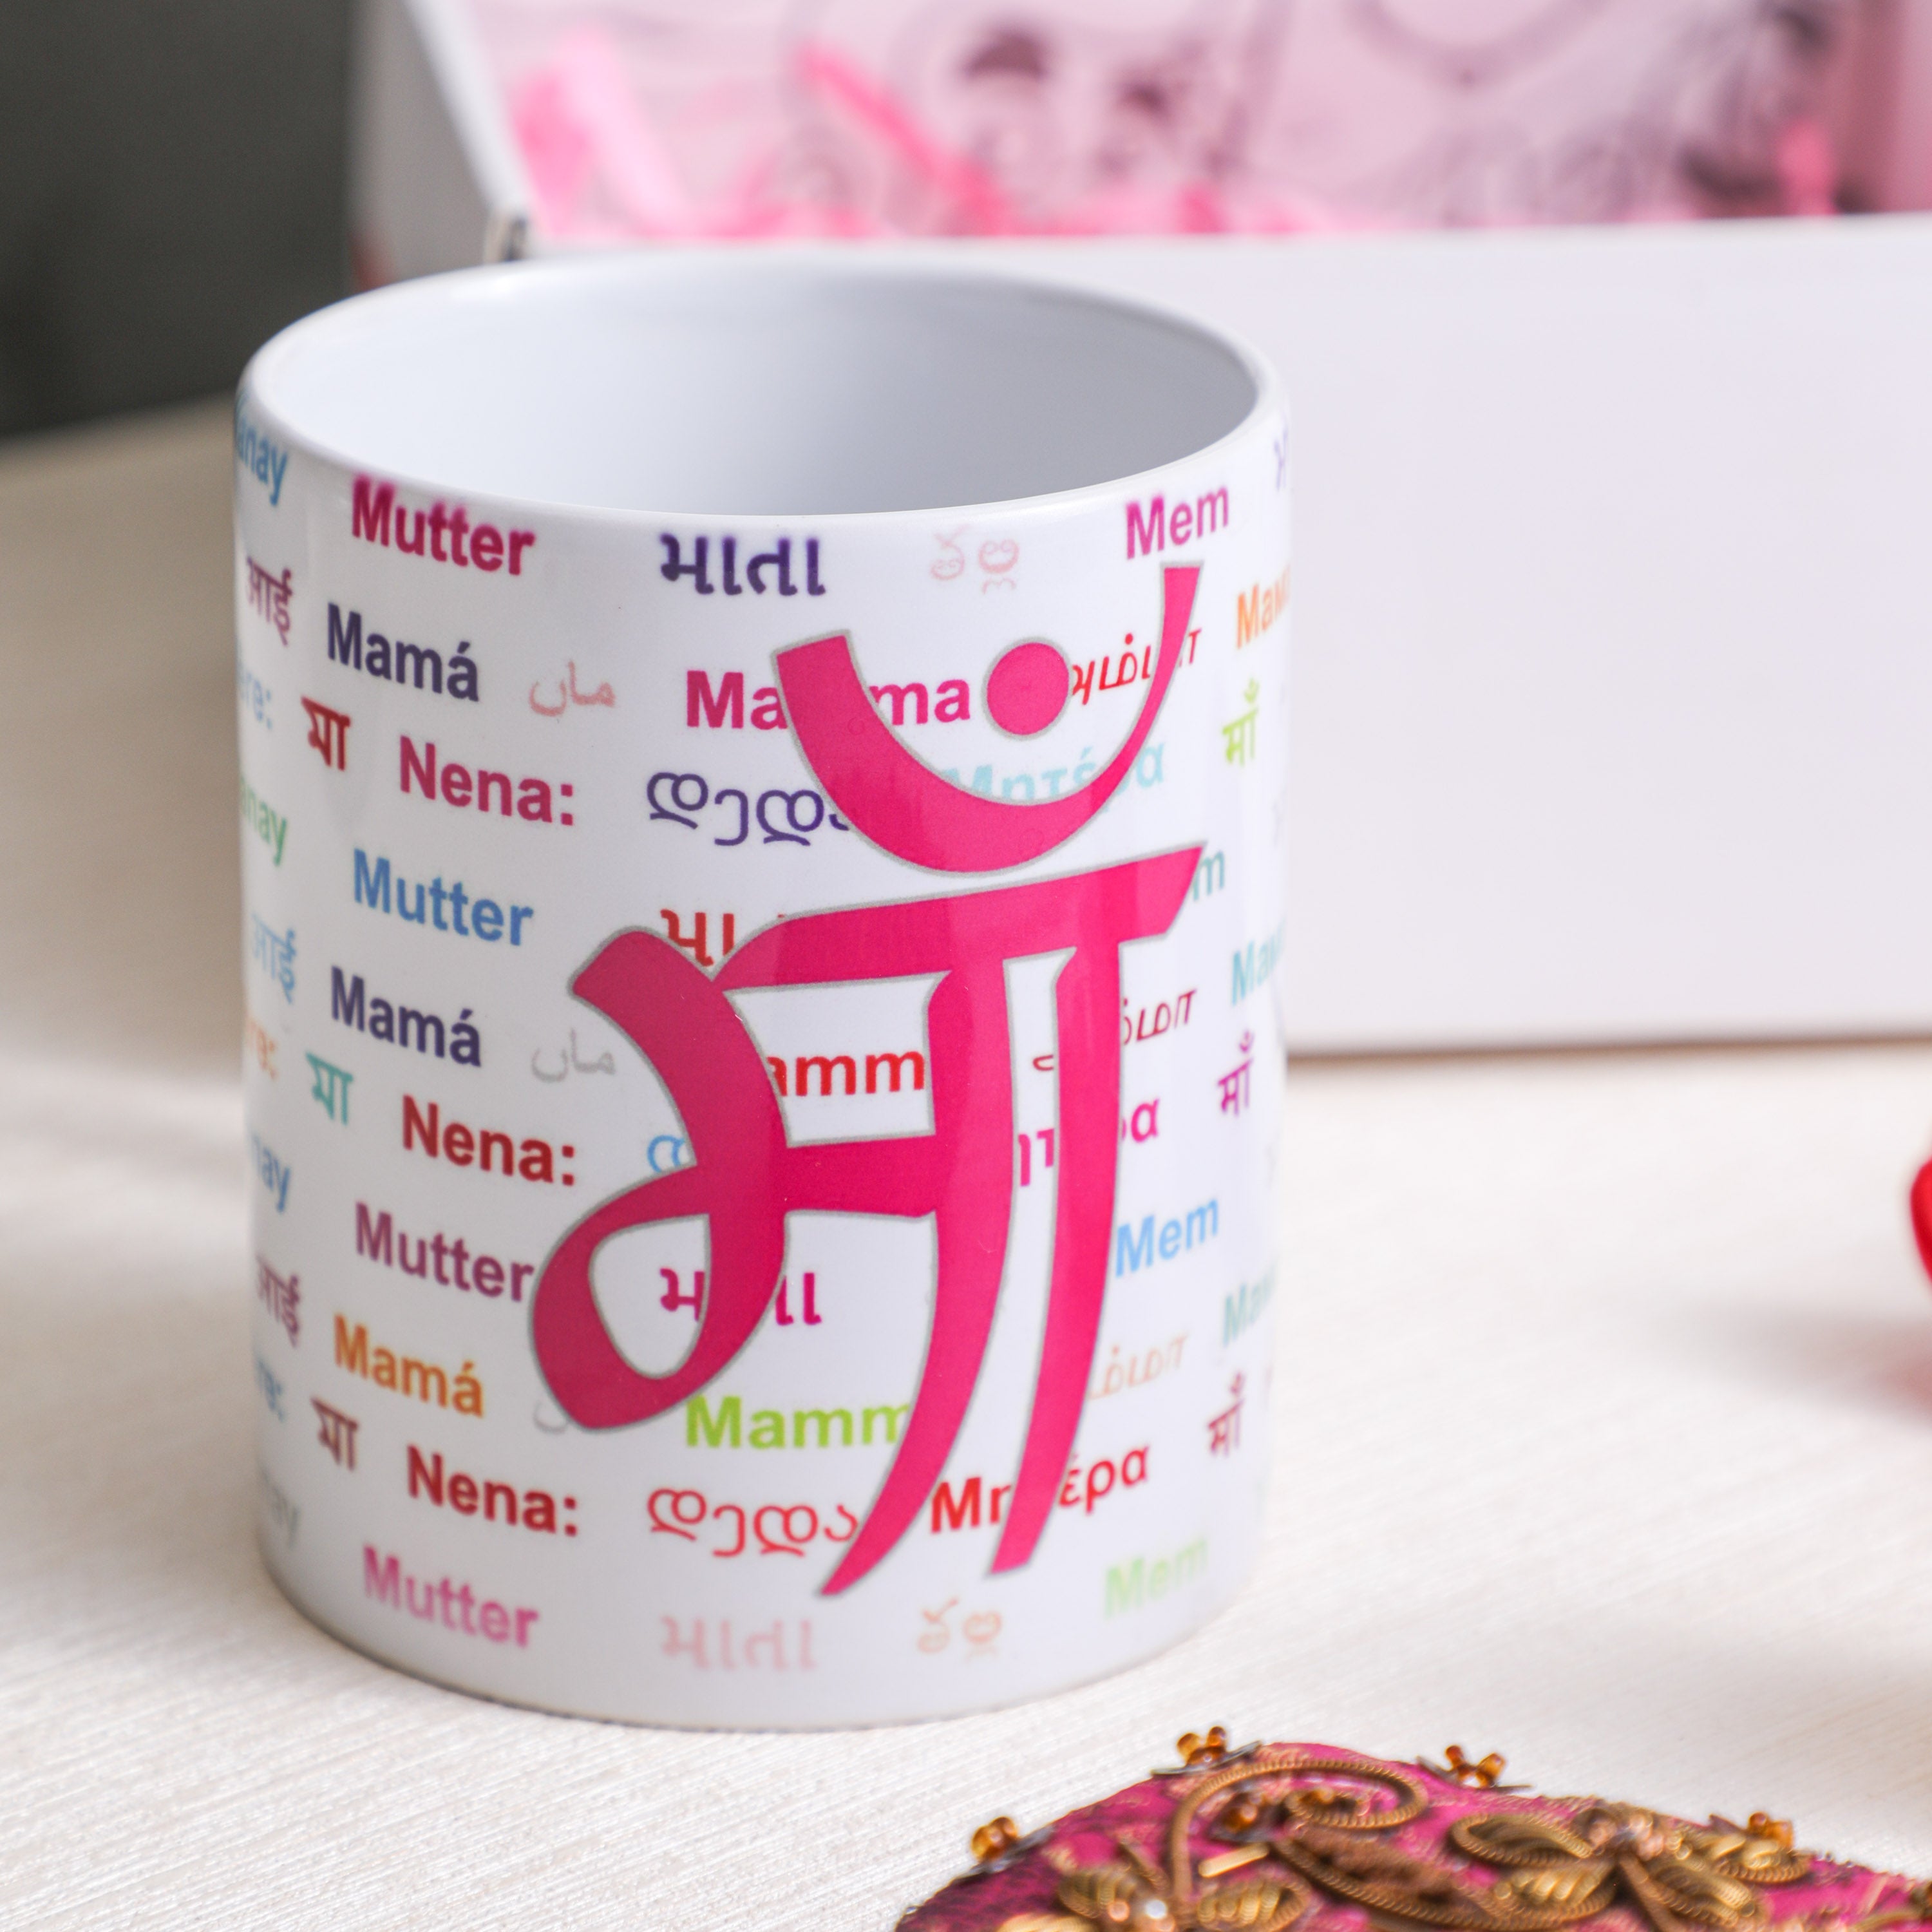 Maa printed coffee mug in muti-language